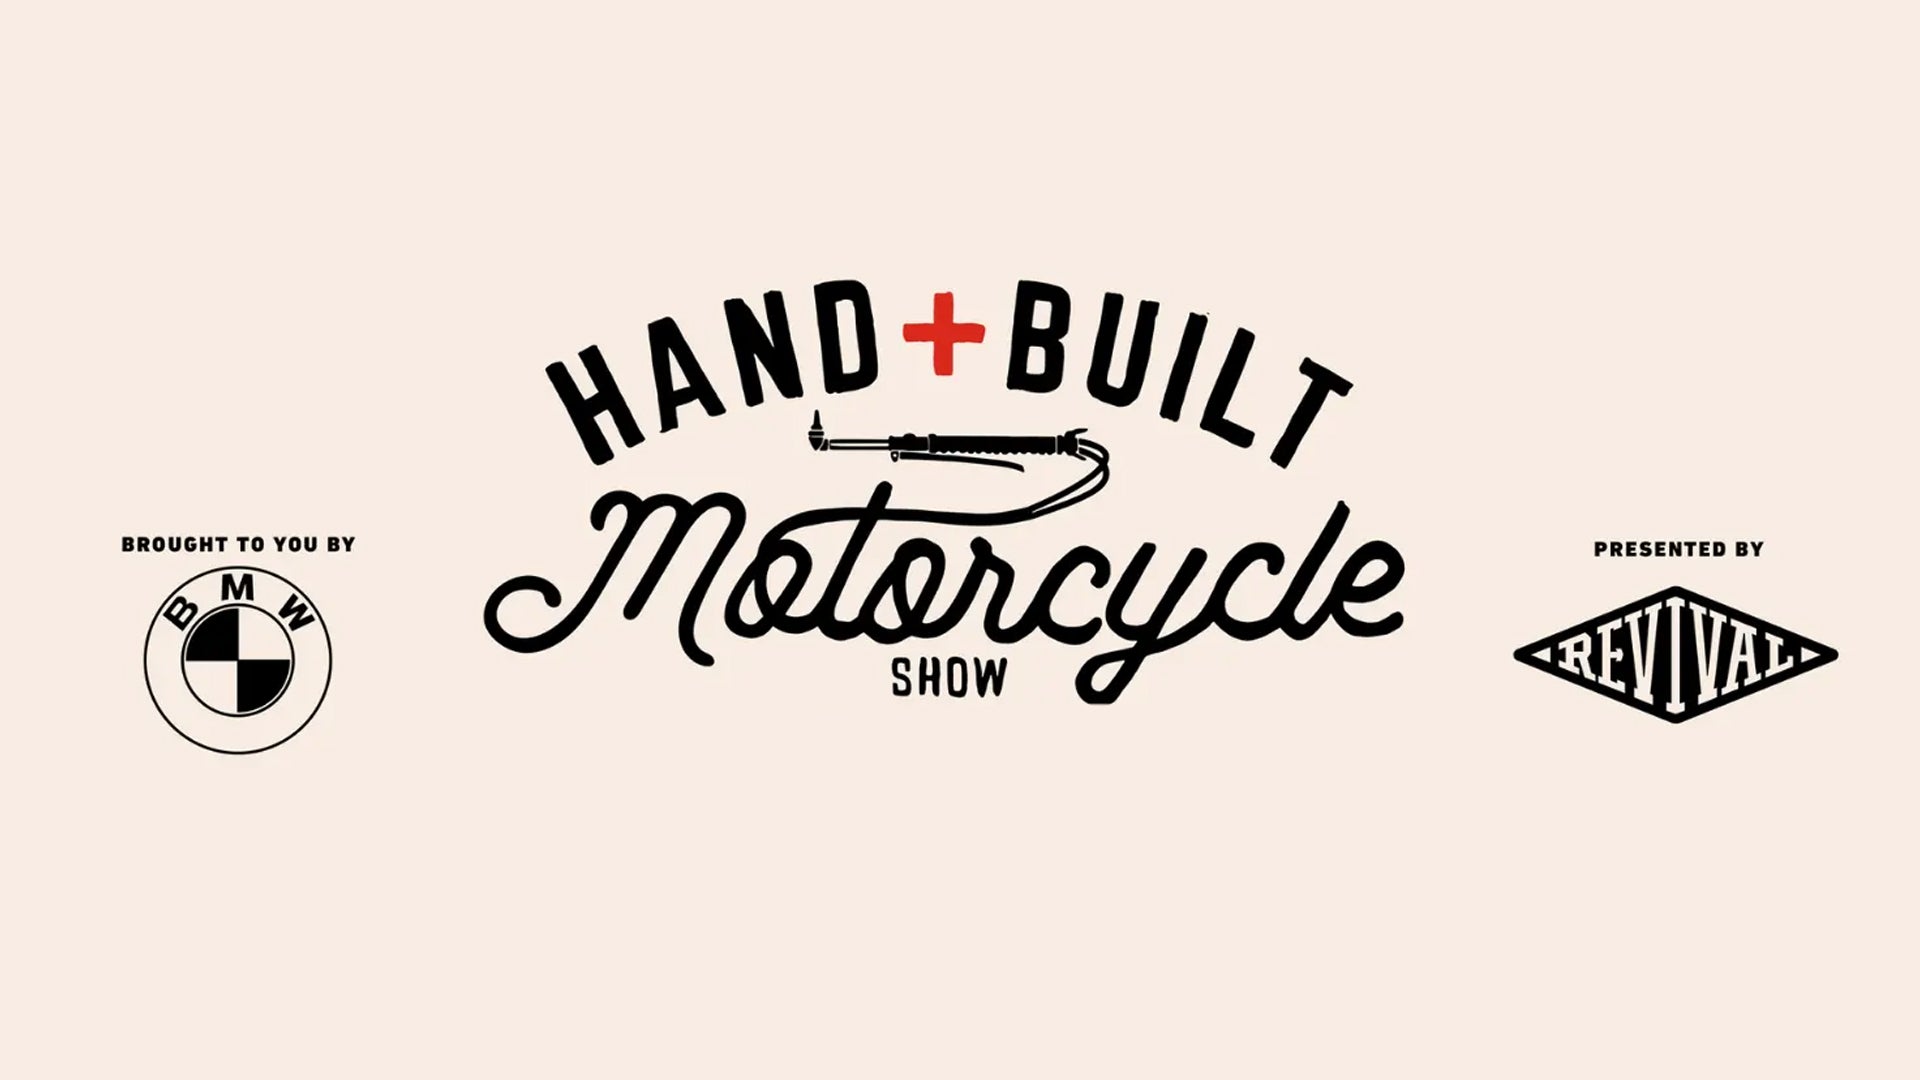 handbuilt motorcycle show